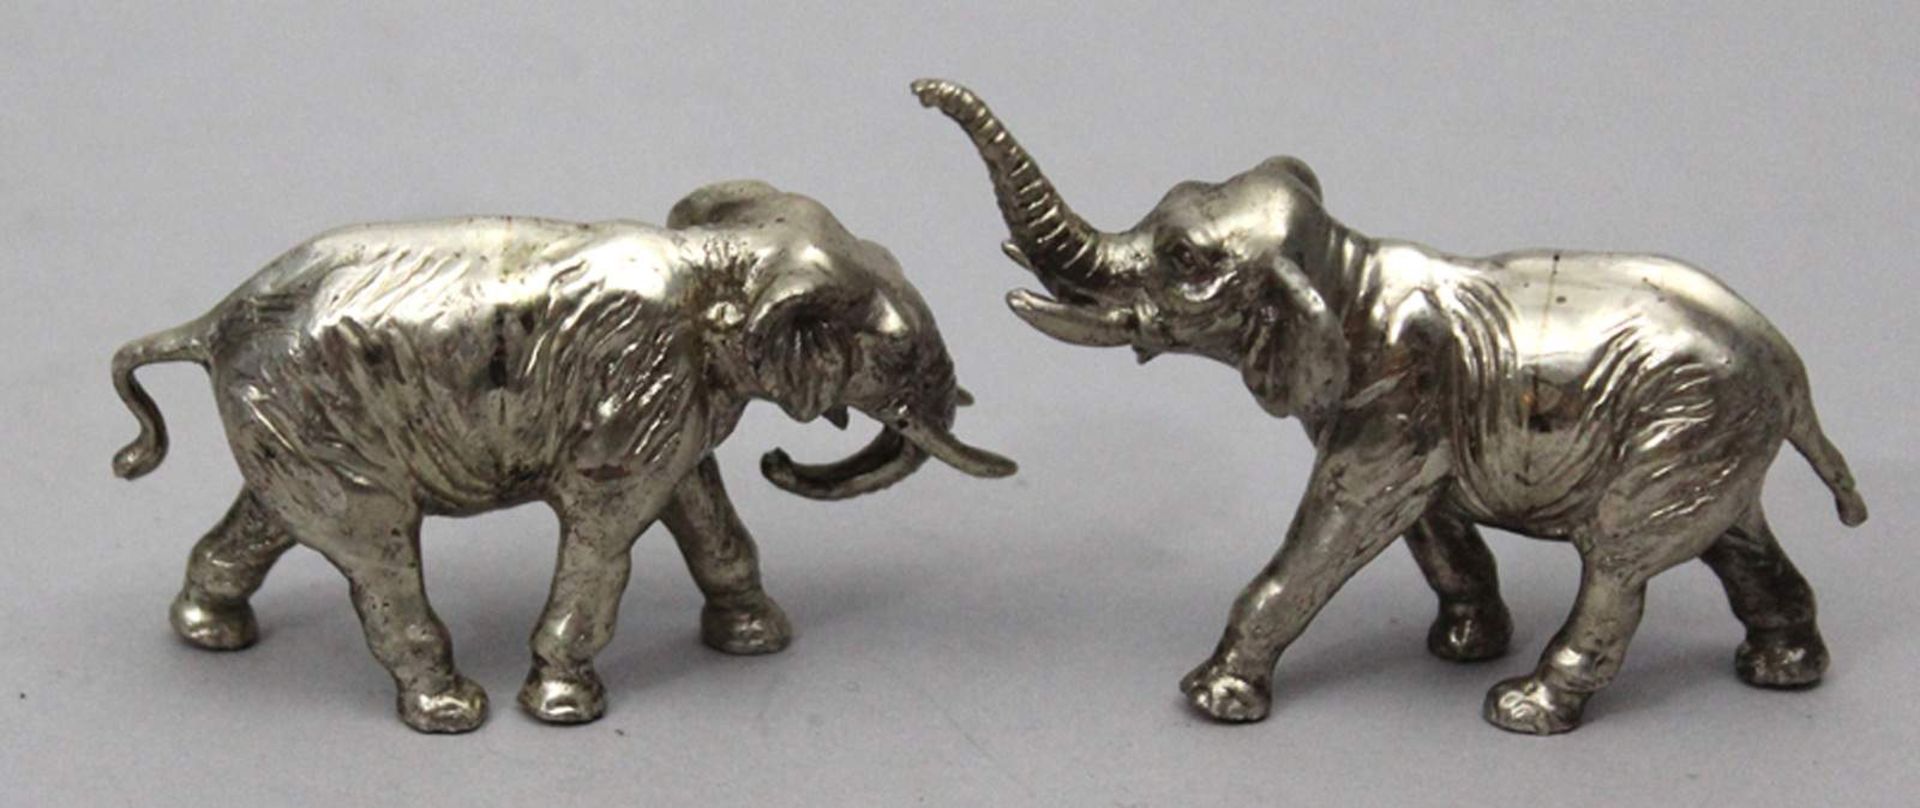 Zwei Elefantenskulpturen.Massives 935/000 Silber, zus. 165 g. Einmal mit aufgerichtetem Rüssel. - Bild 2 aus 2